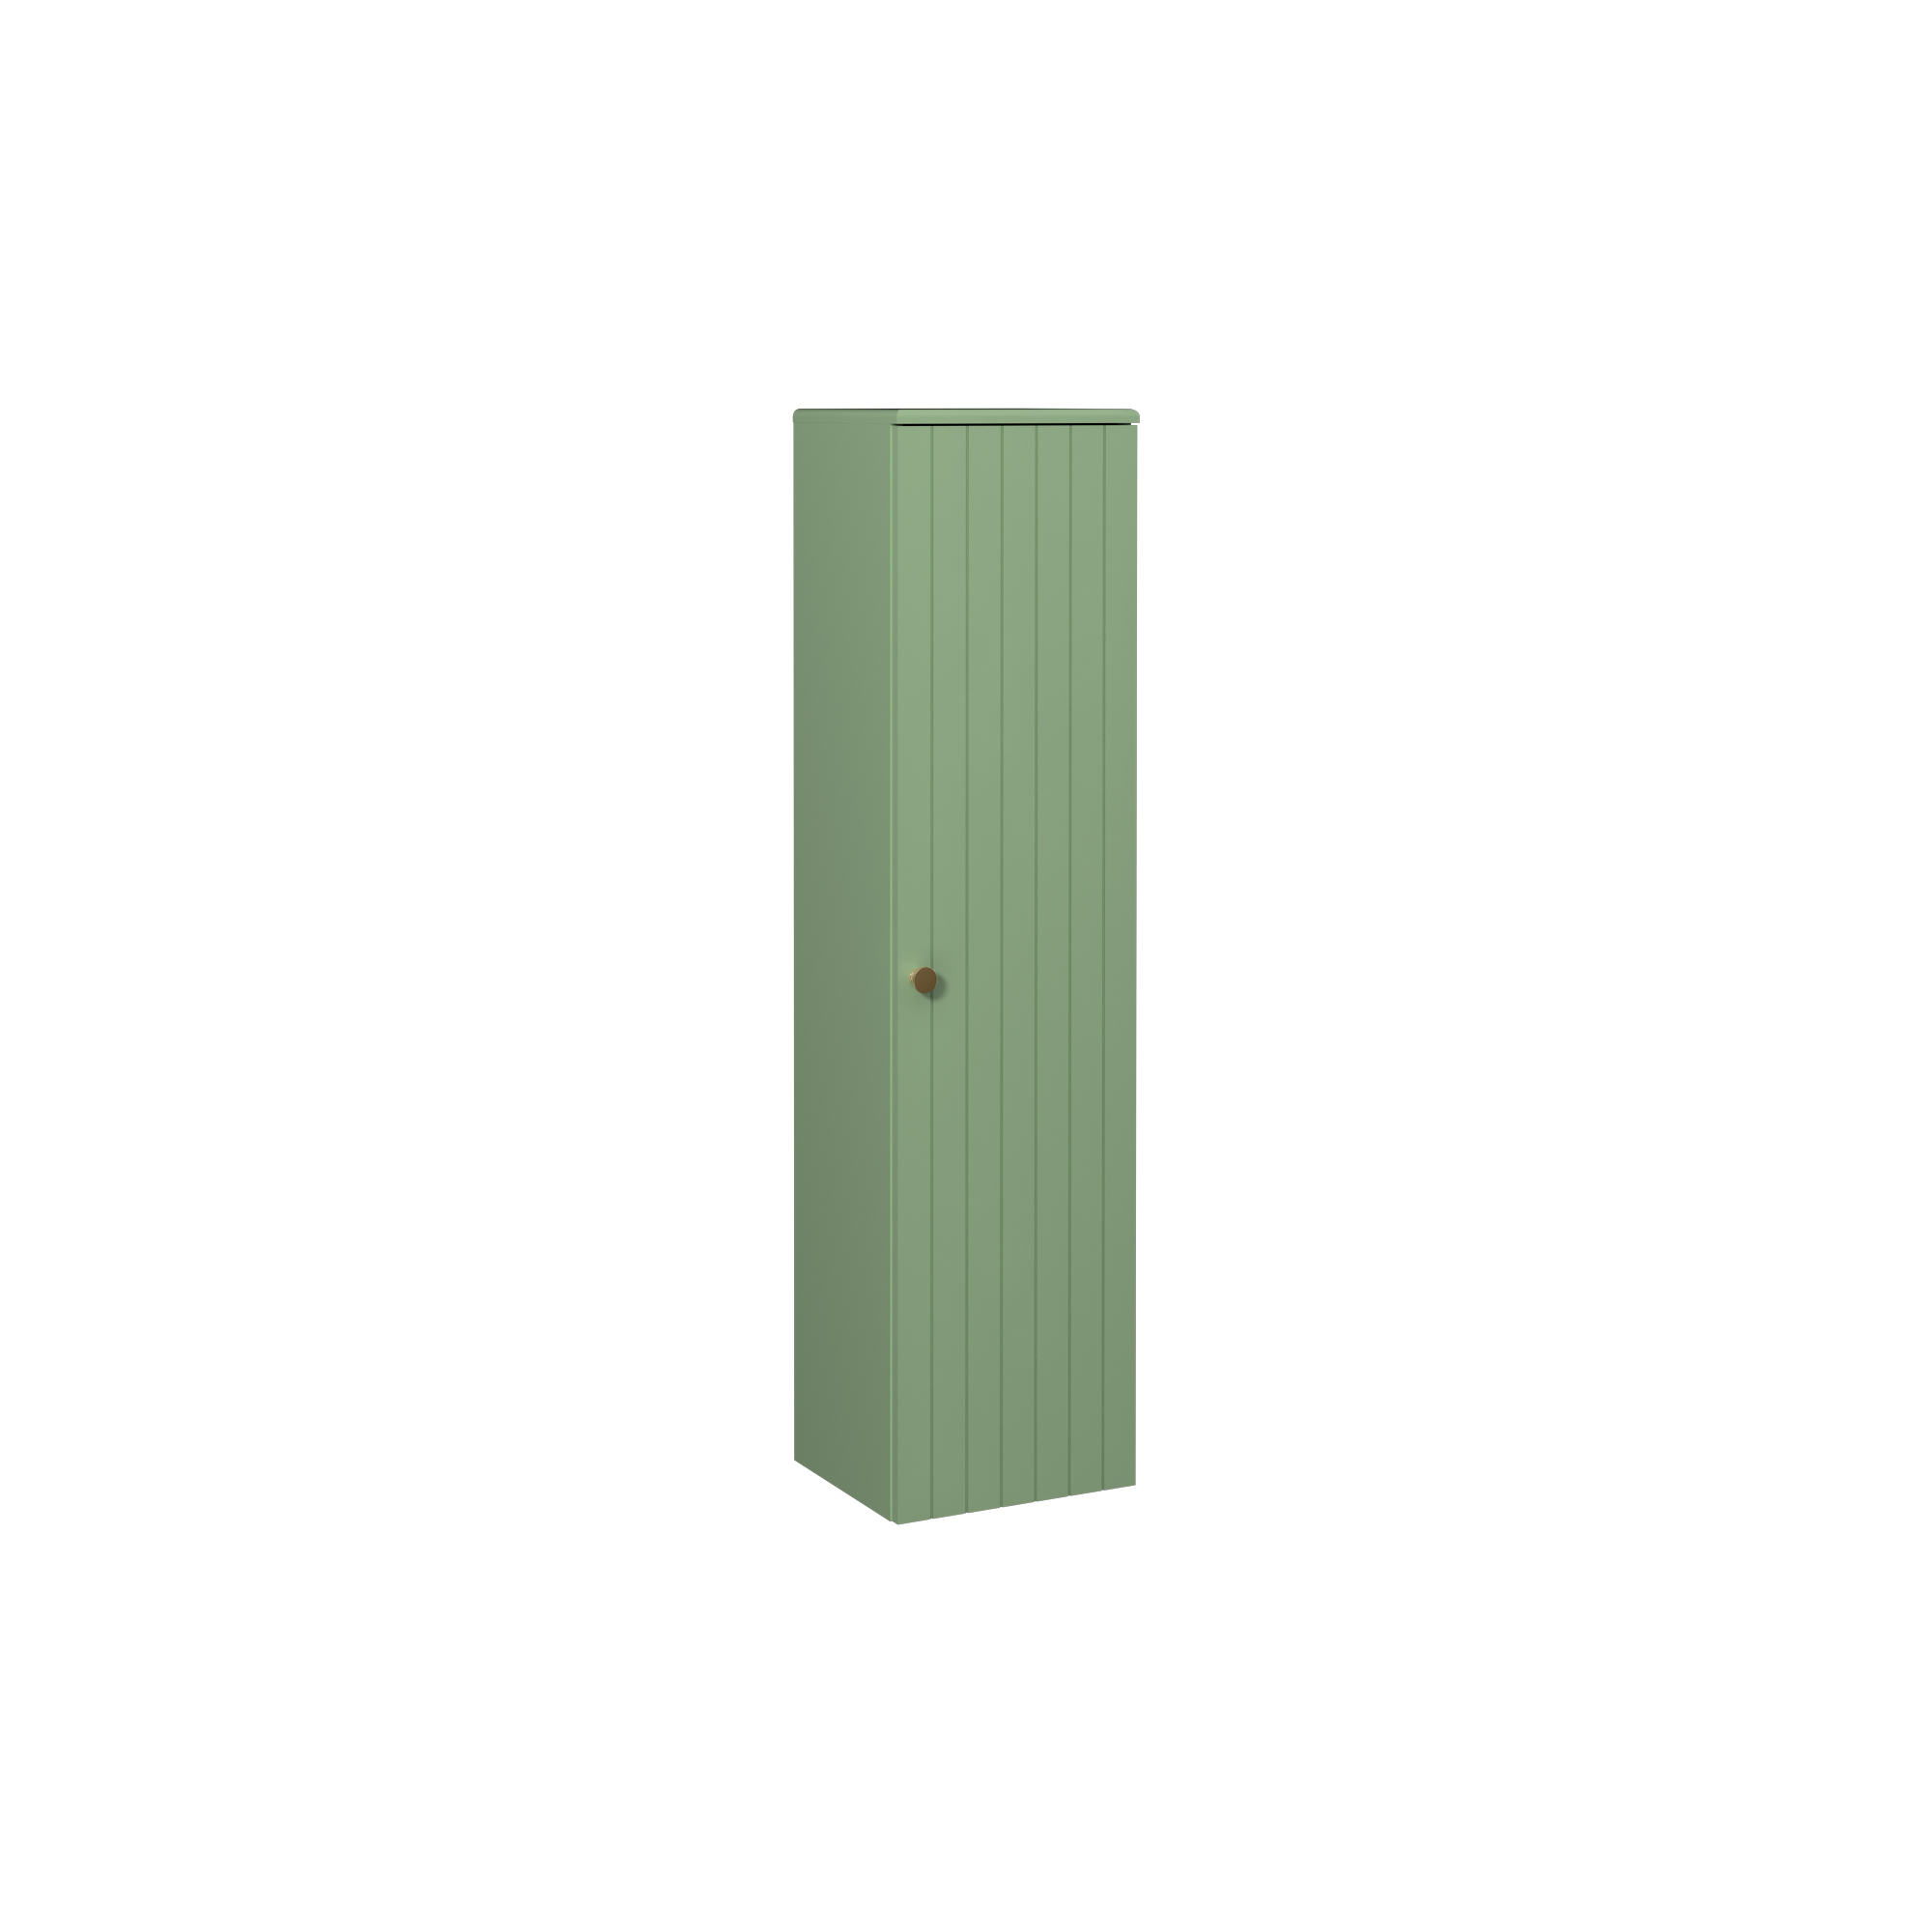 Rinato Upper Cabinet, Pastel Green Right 25 cm